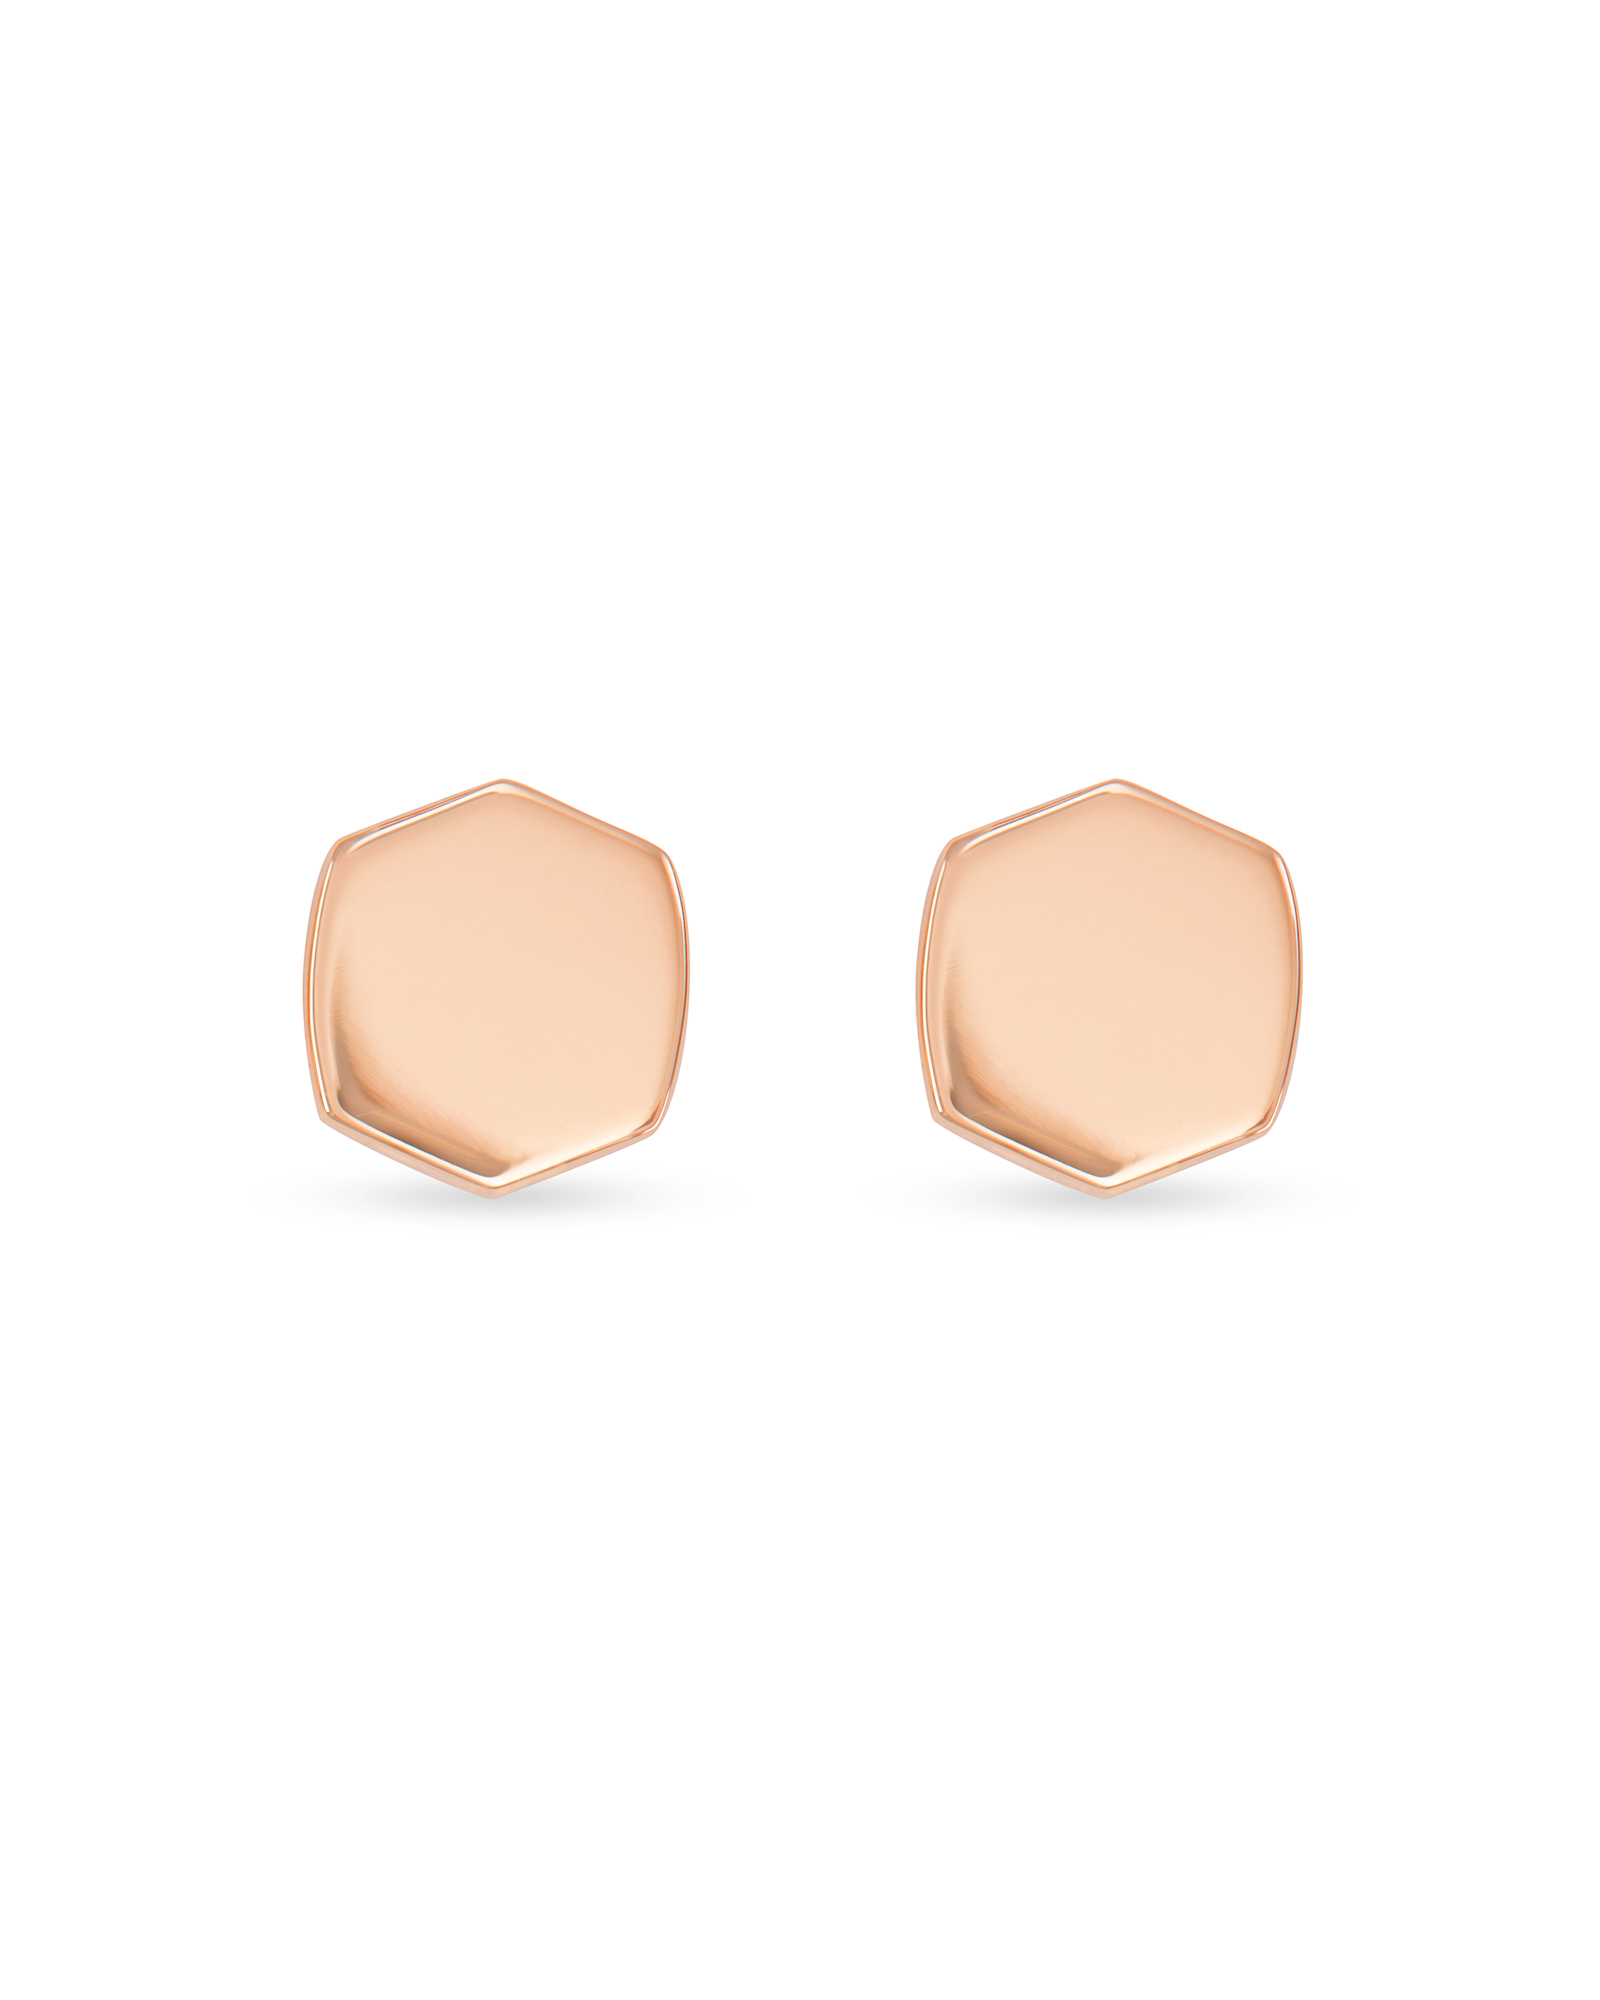 Davis Stud Earring in 18k Rose Gold Vermeil | Kendra Scott